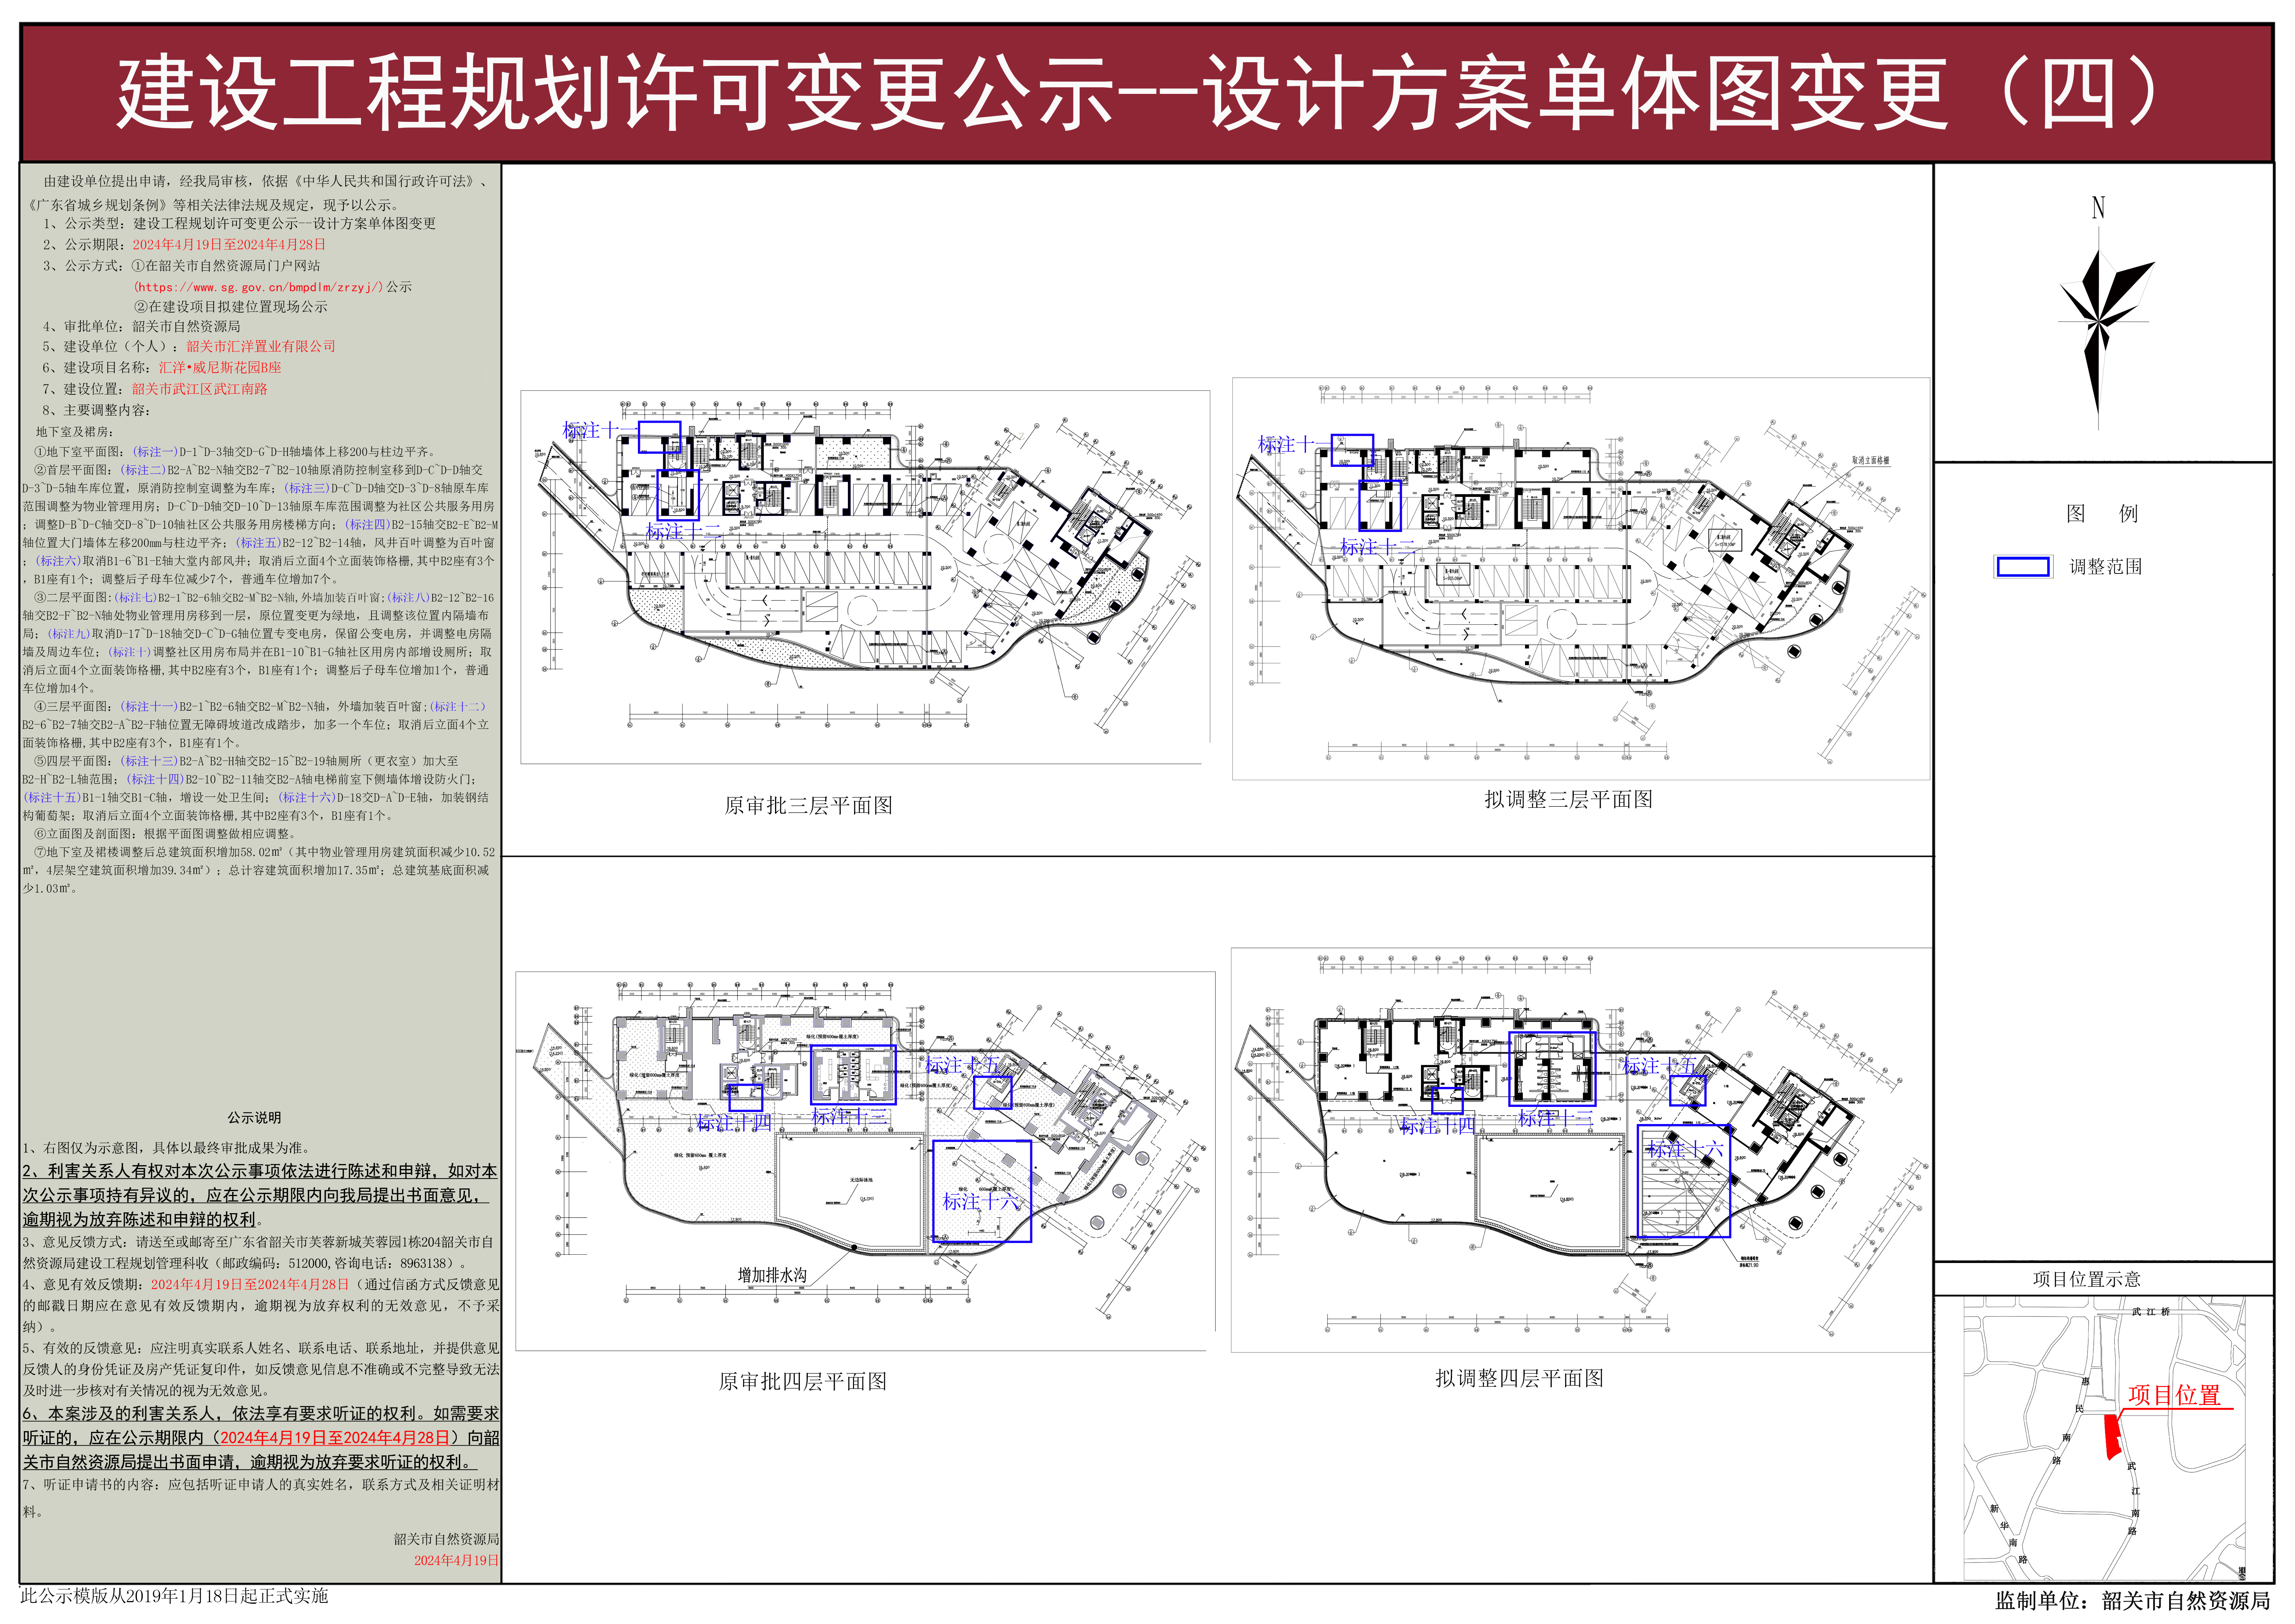 04汇洋&bull;威尼斯花园B座建设工程规划许可变更公示--设计方案单体图变更.jpg